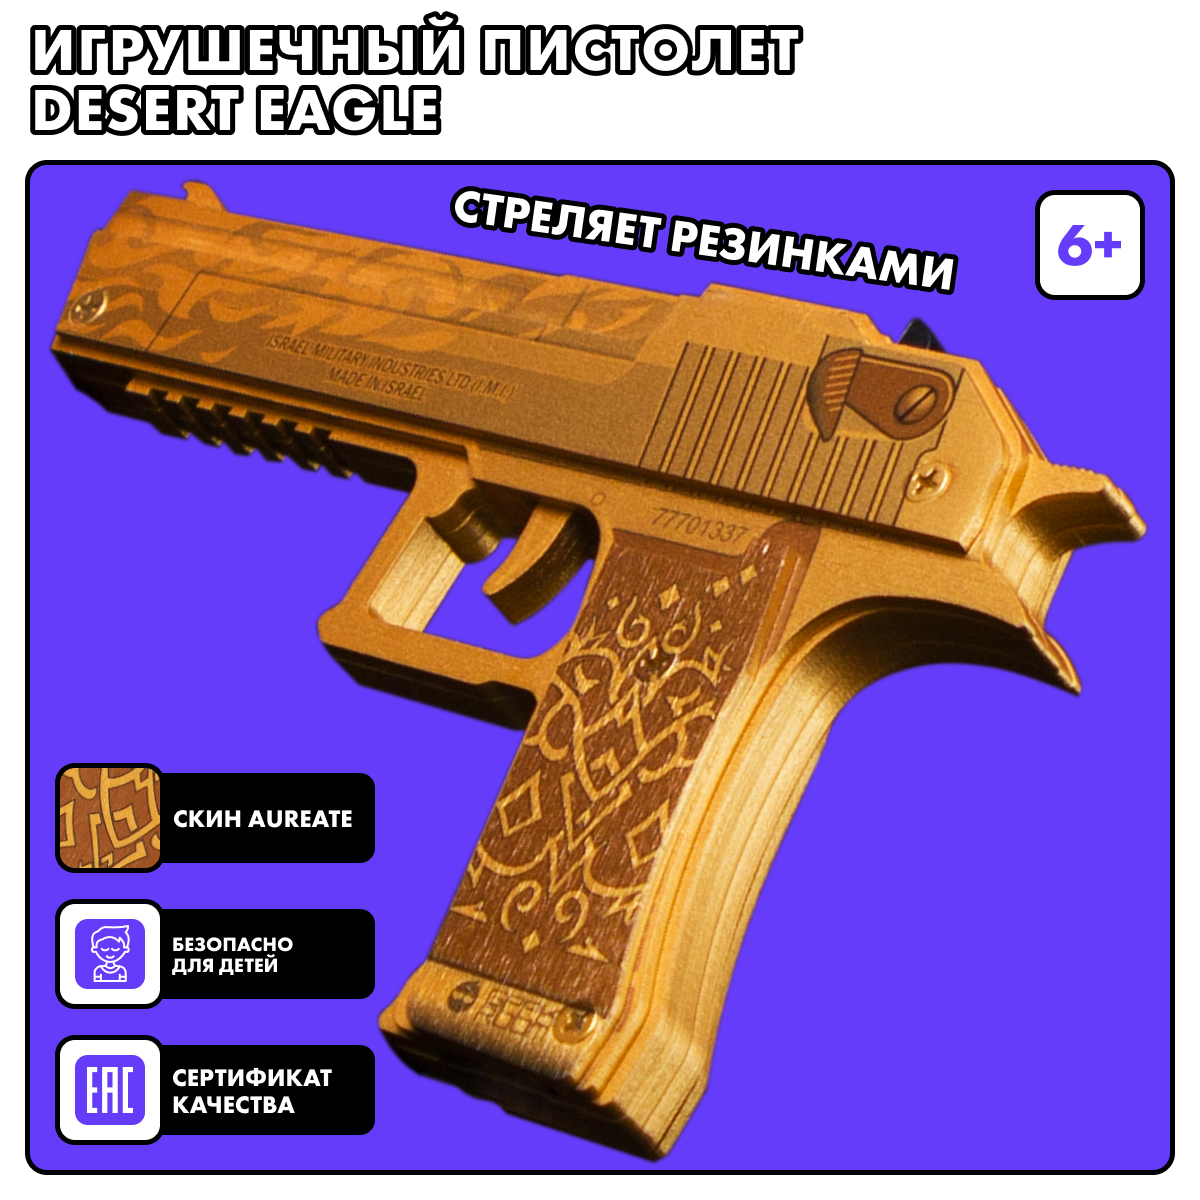 Резинкострел игрушечный Geekroom Деревянный пистолет Desert eagle Aureate